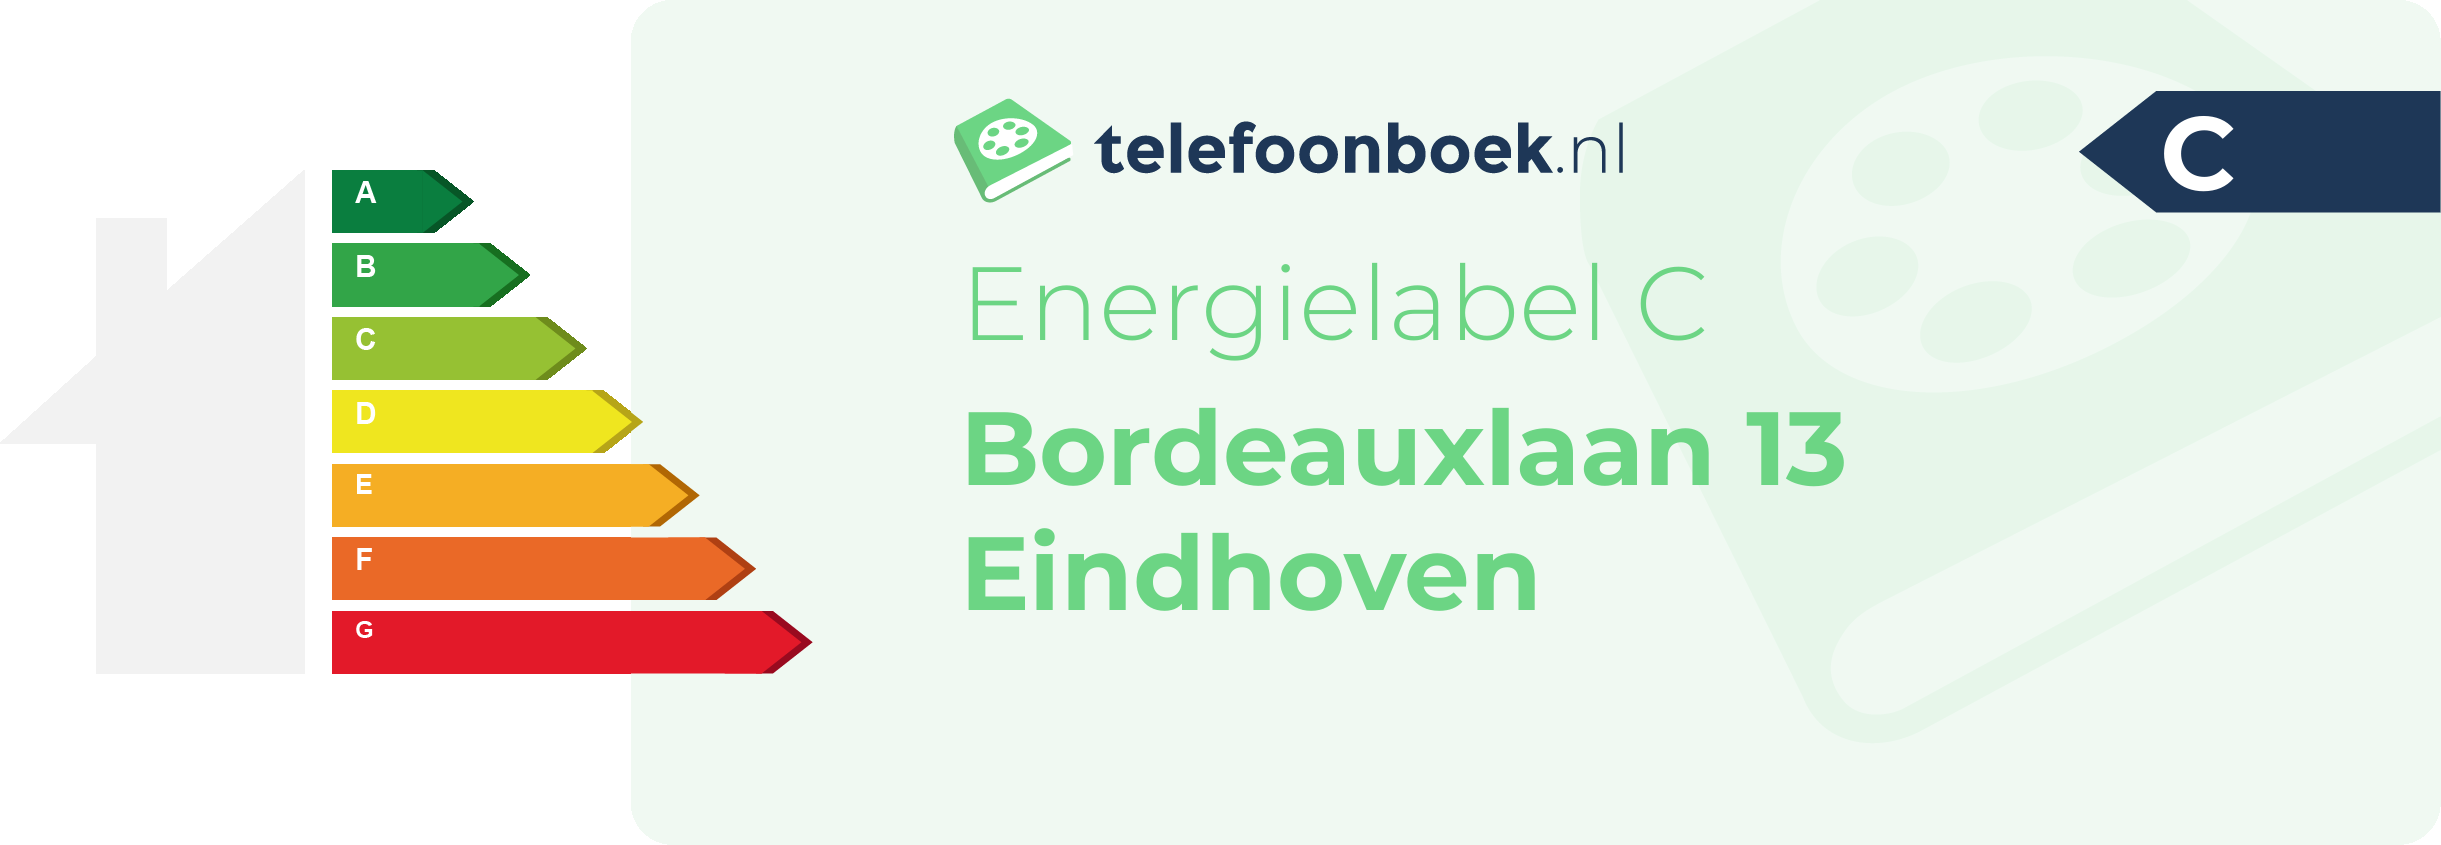 Energielabel Bordeauxlaan 13 Eindhoven